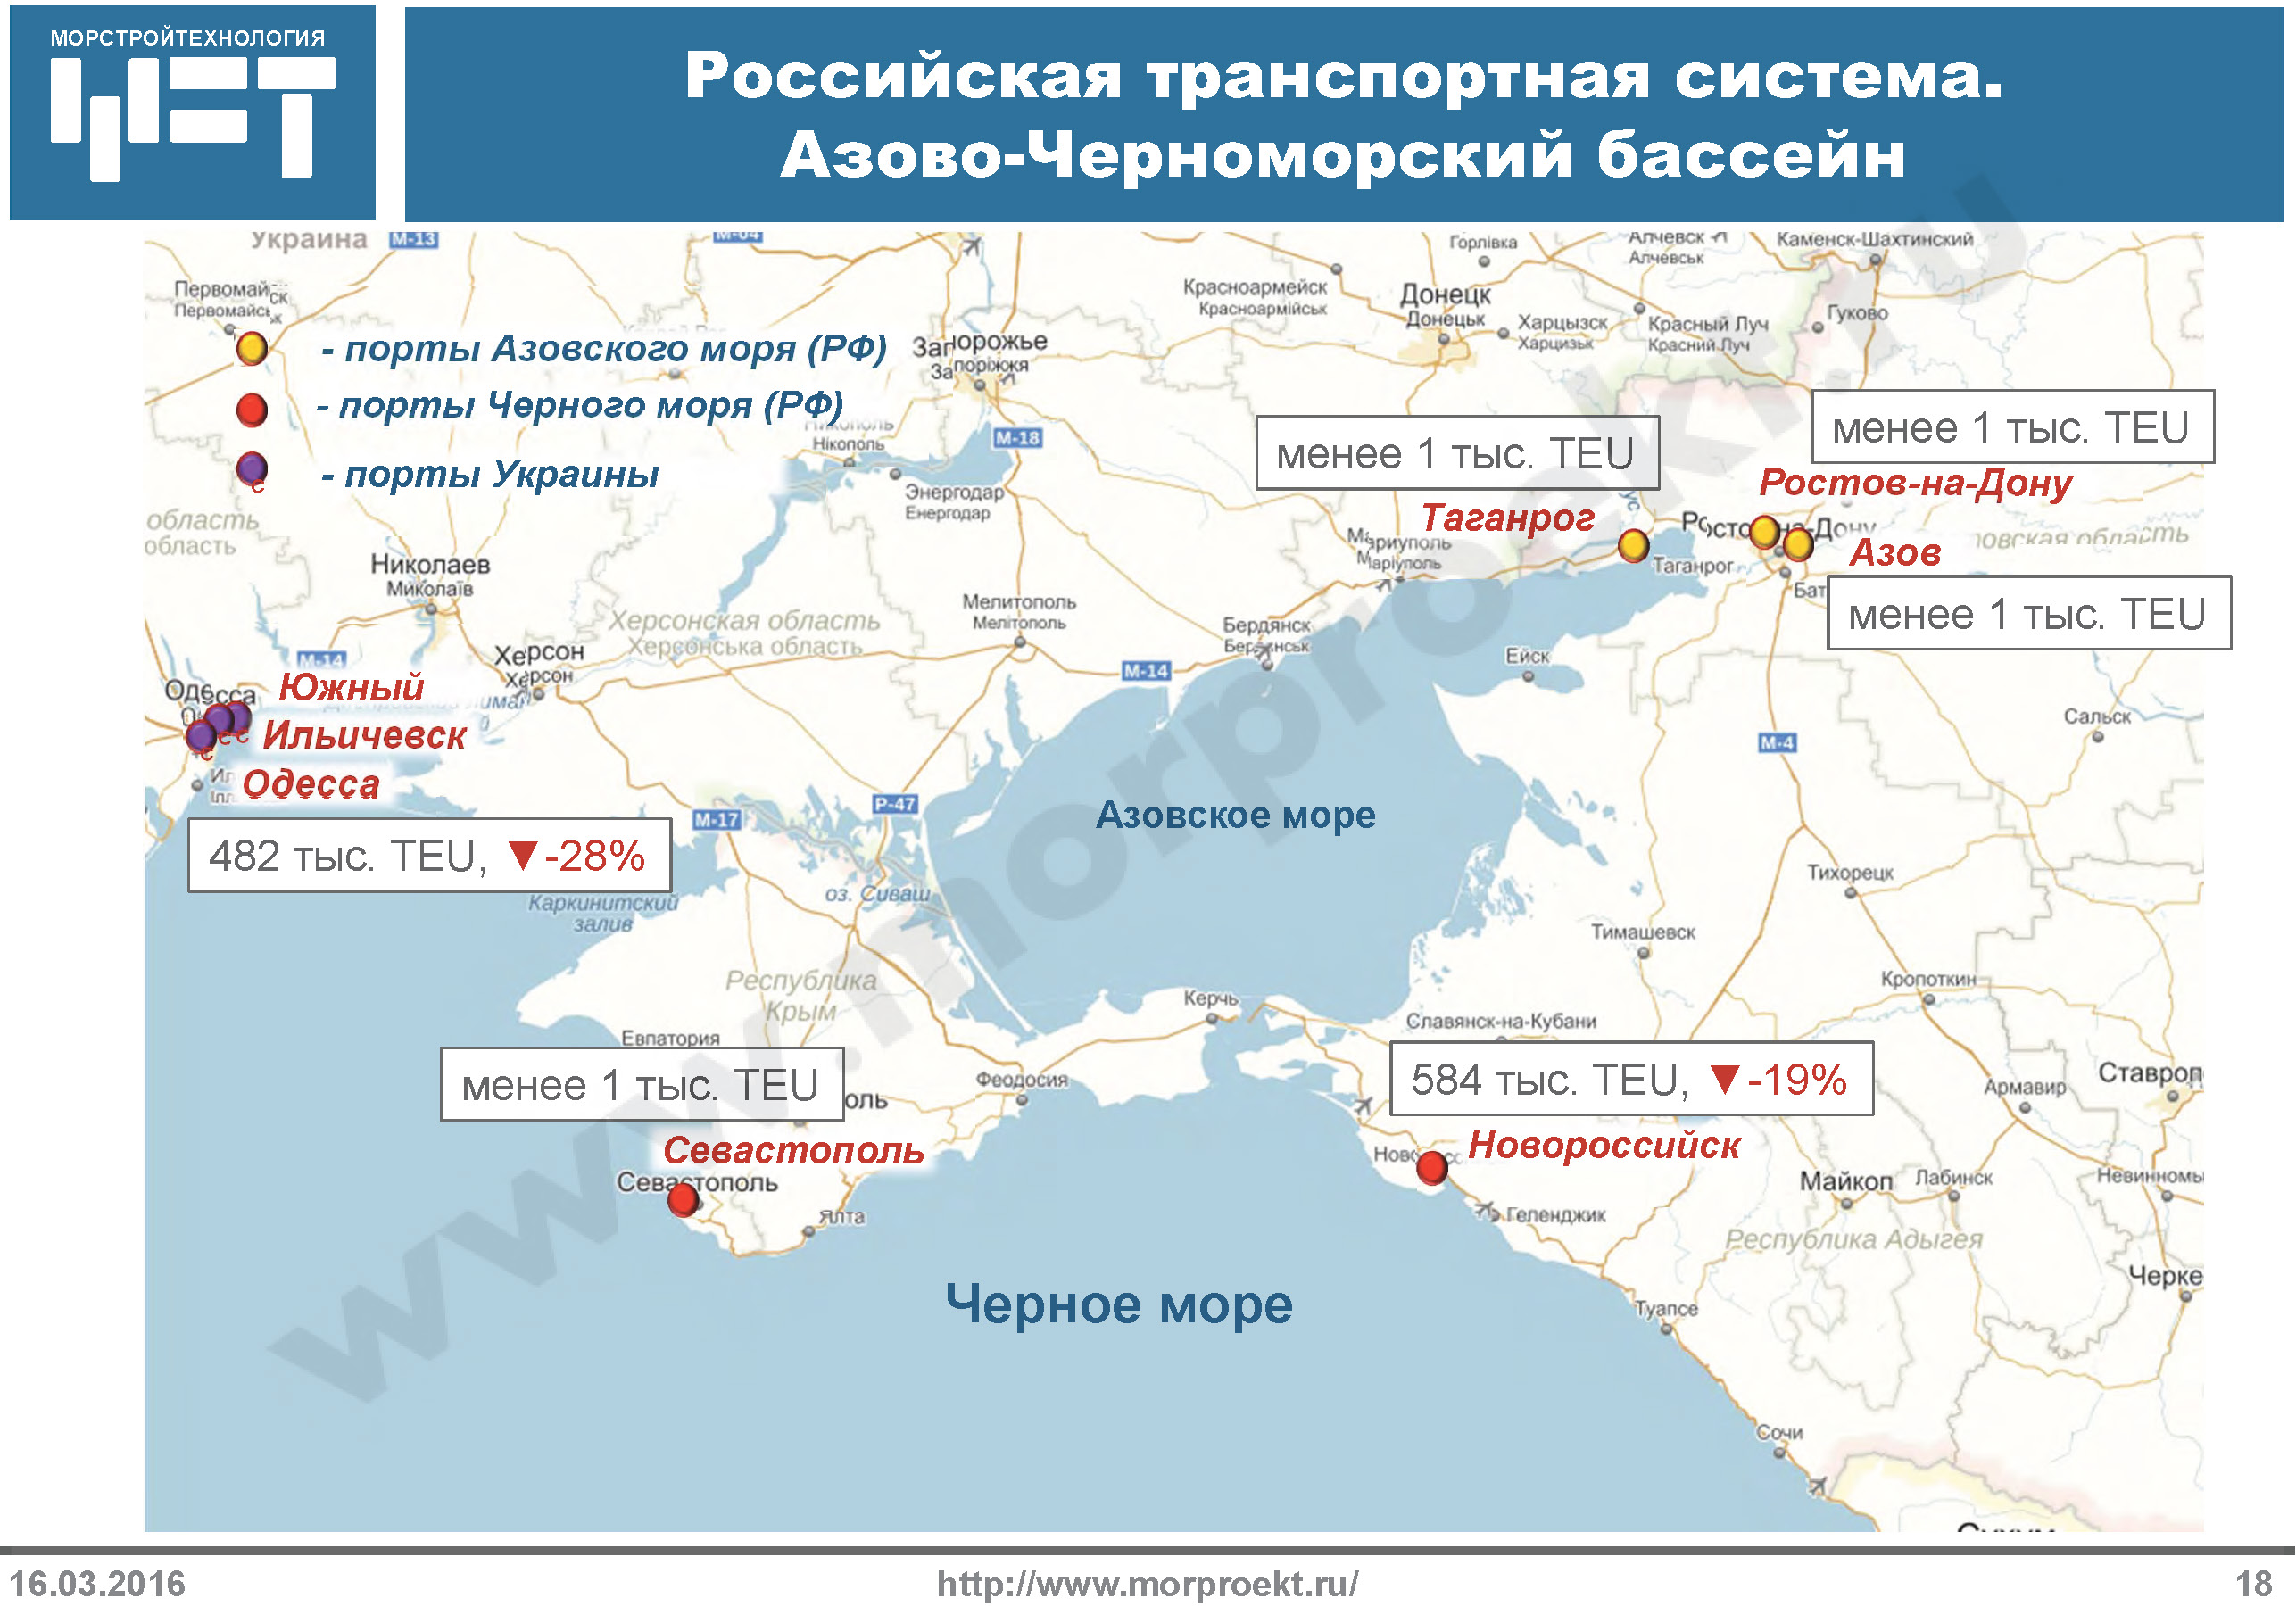 В Азово-Черноморском бассейне практически весь контейнерный грузопоток сконцентрирован в порту Новороссийск